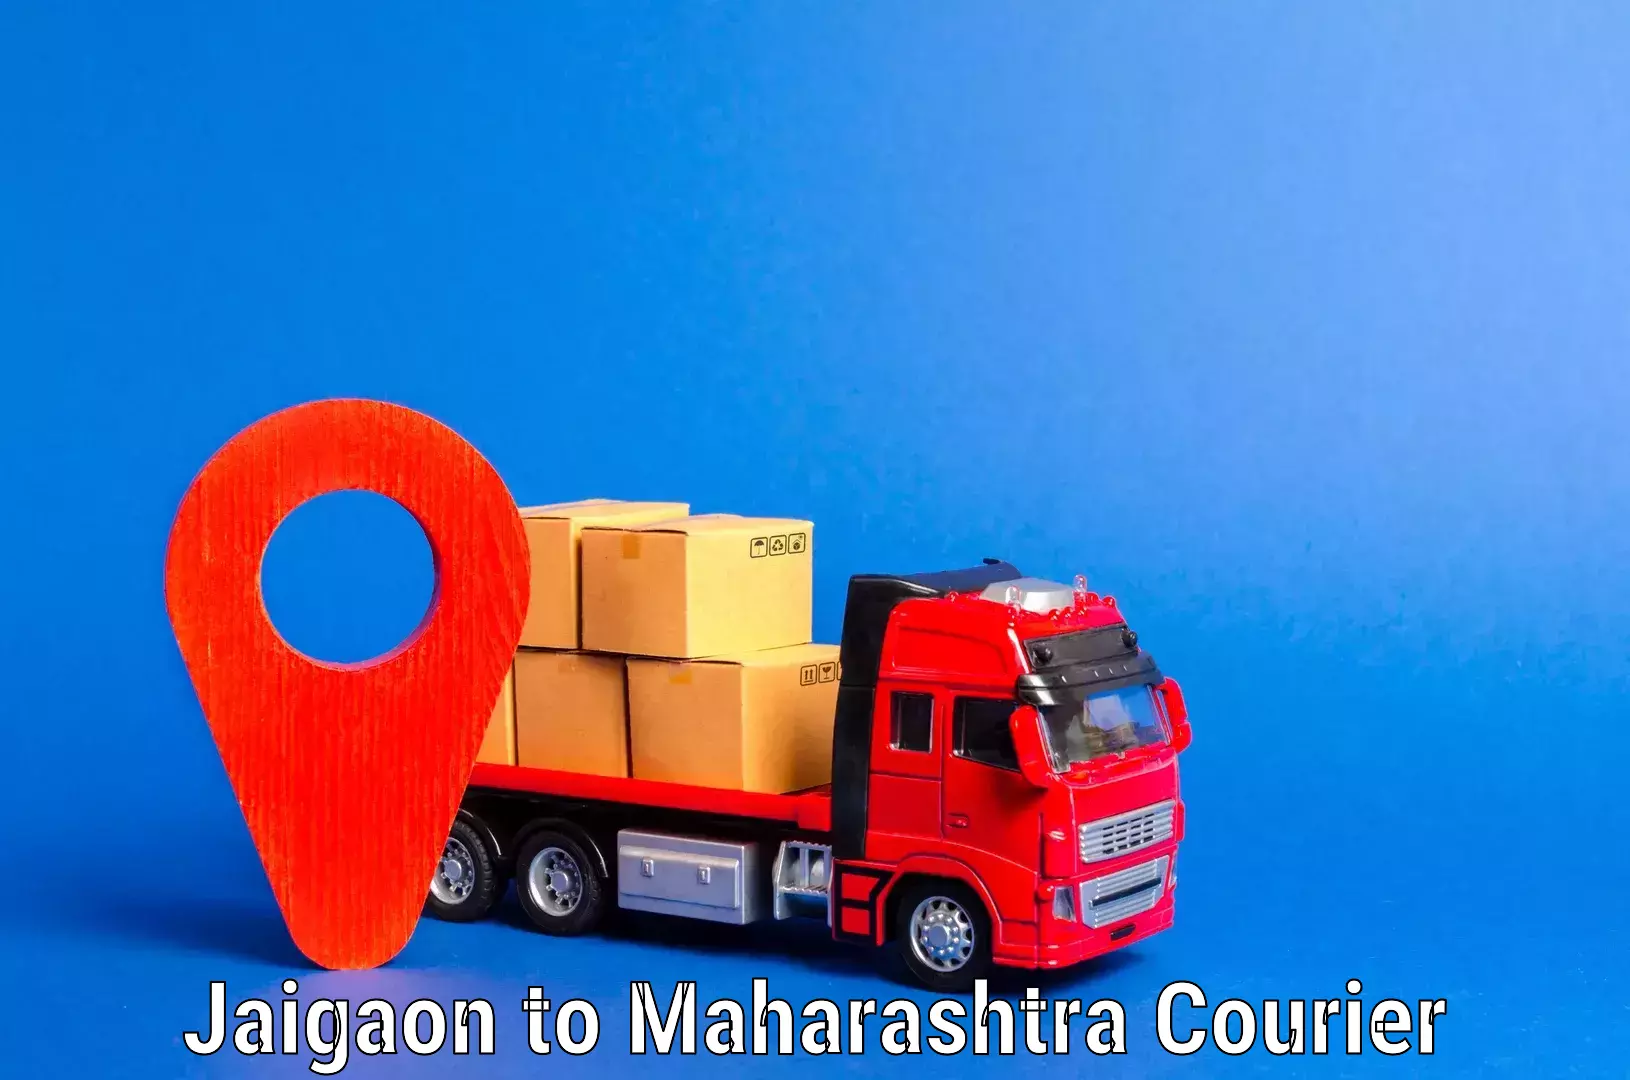 Budget-friendly moving services Jaigaon to Maharashtra